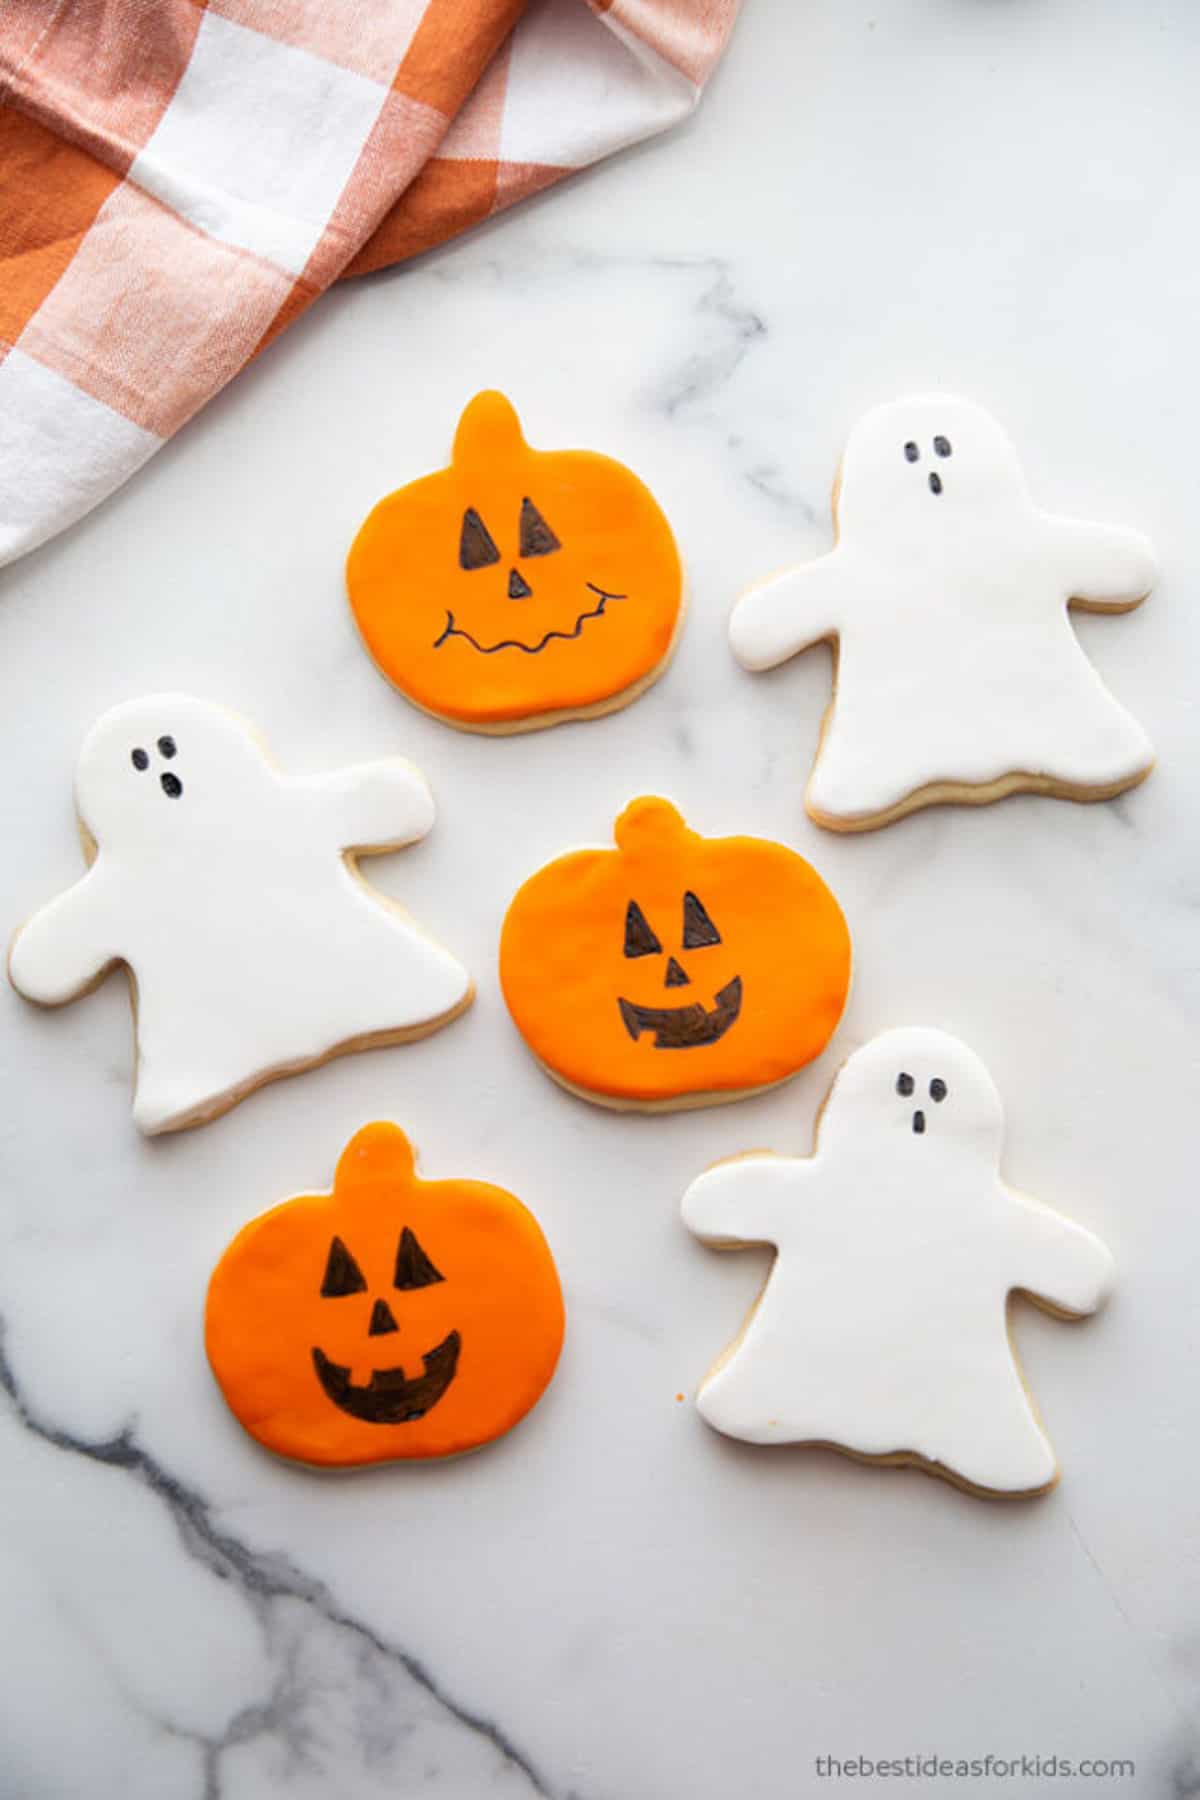 sugar cookies that look like ghosts and pumpkins